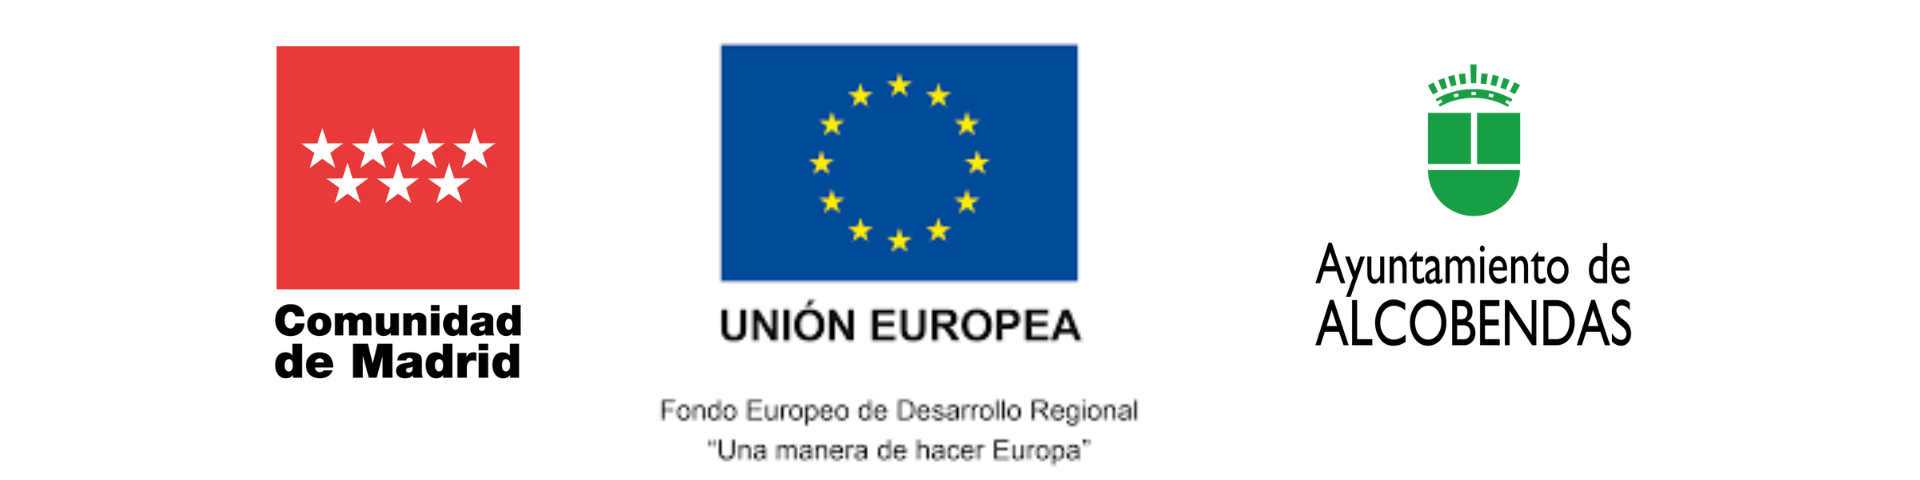 Logos Madrid, Europa y Alcobendas